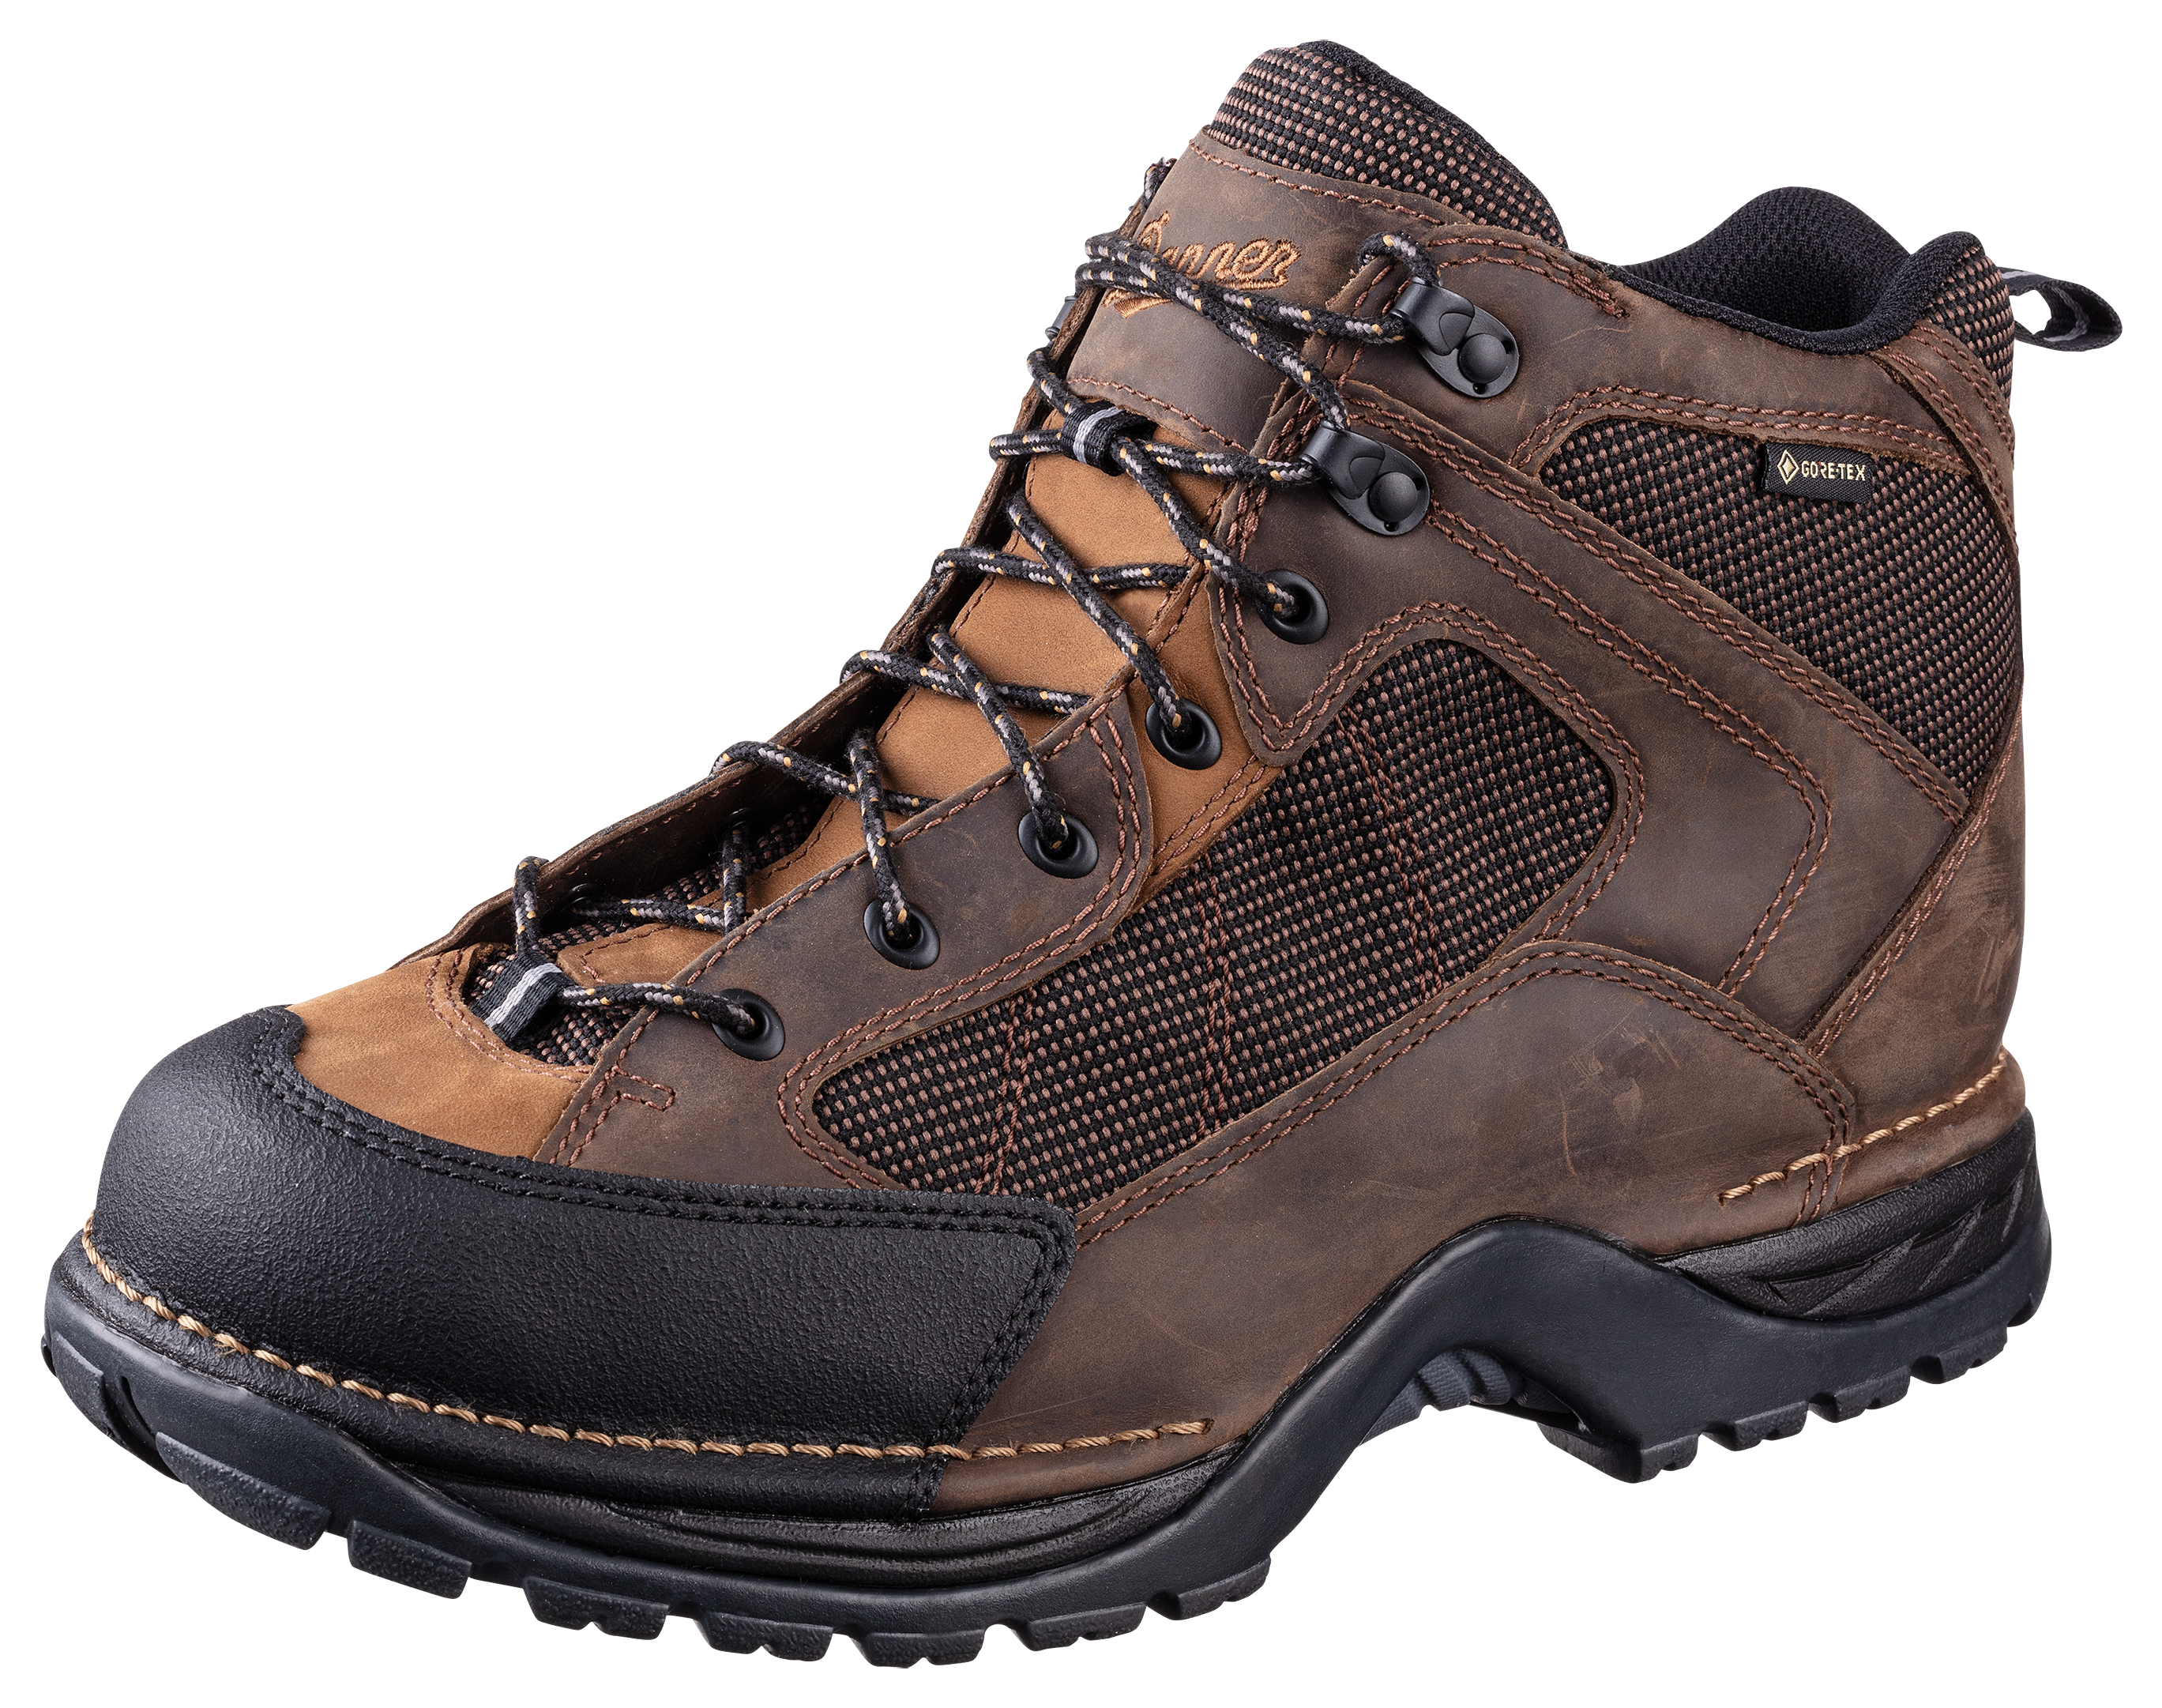 Danner Radical 452 GORE-TEX Hiking Boots for Men - Dark Brown - 10.5M